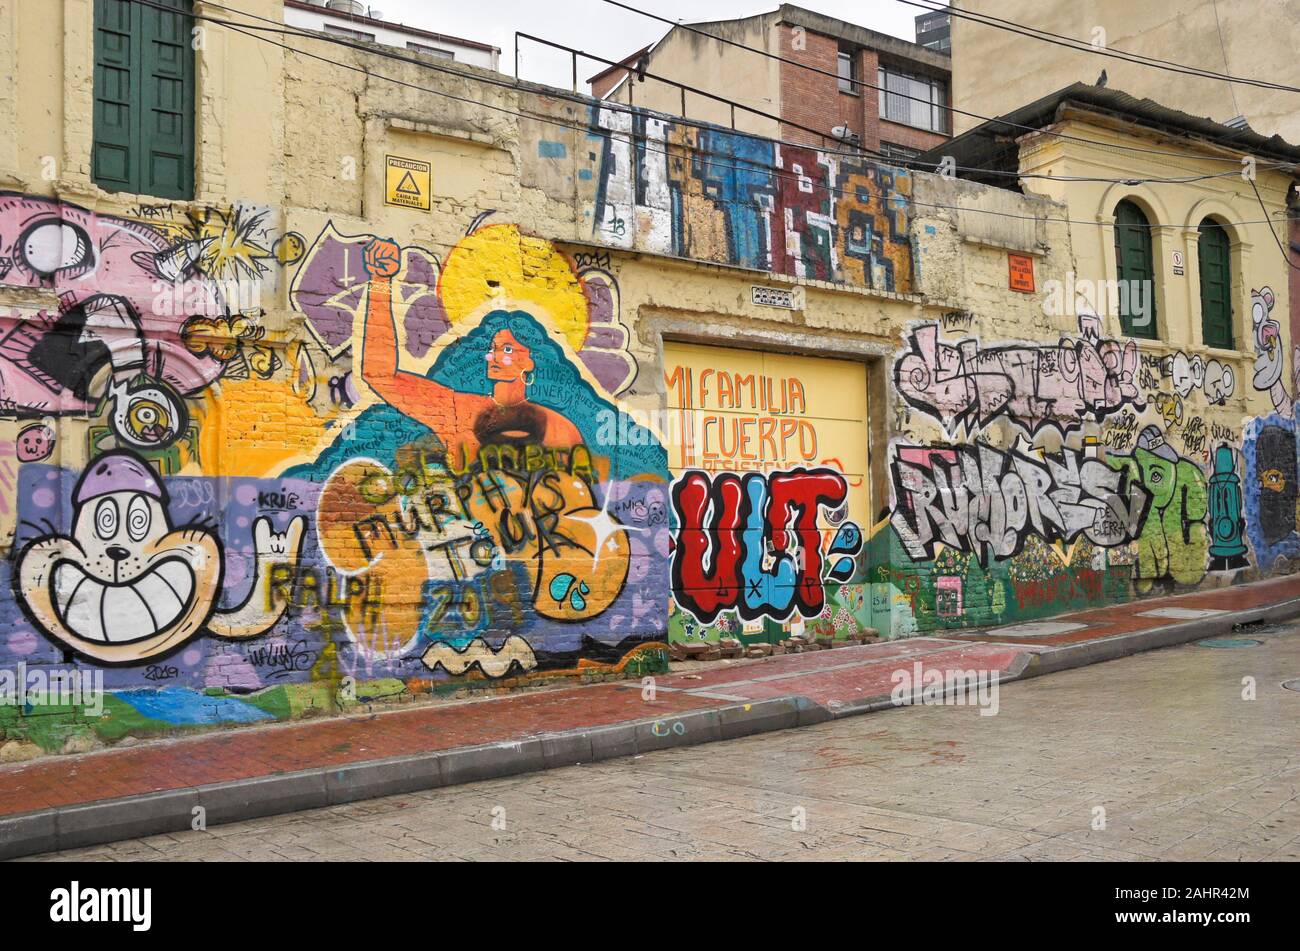 La street art e graffiti dipinti su esterno di edifici in Candelaria distretto di Bogotà, Colombia Foto Stock